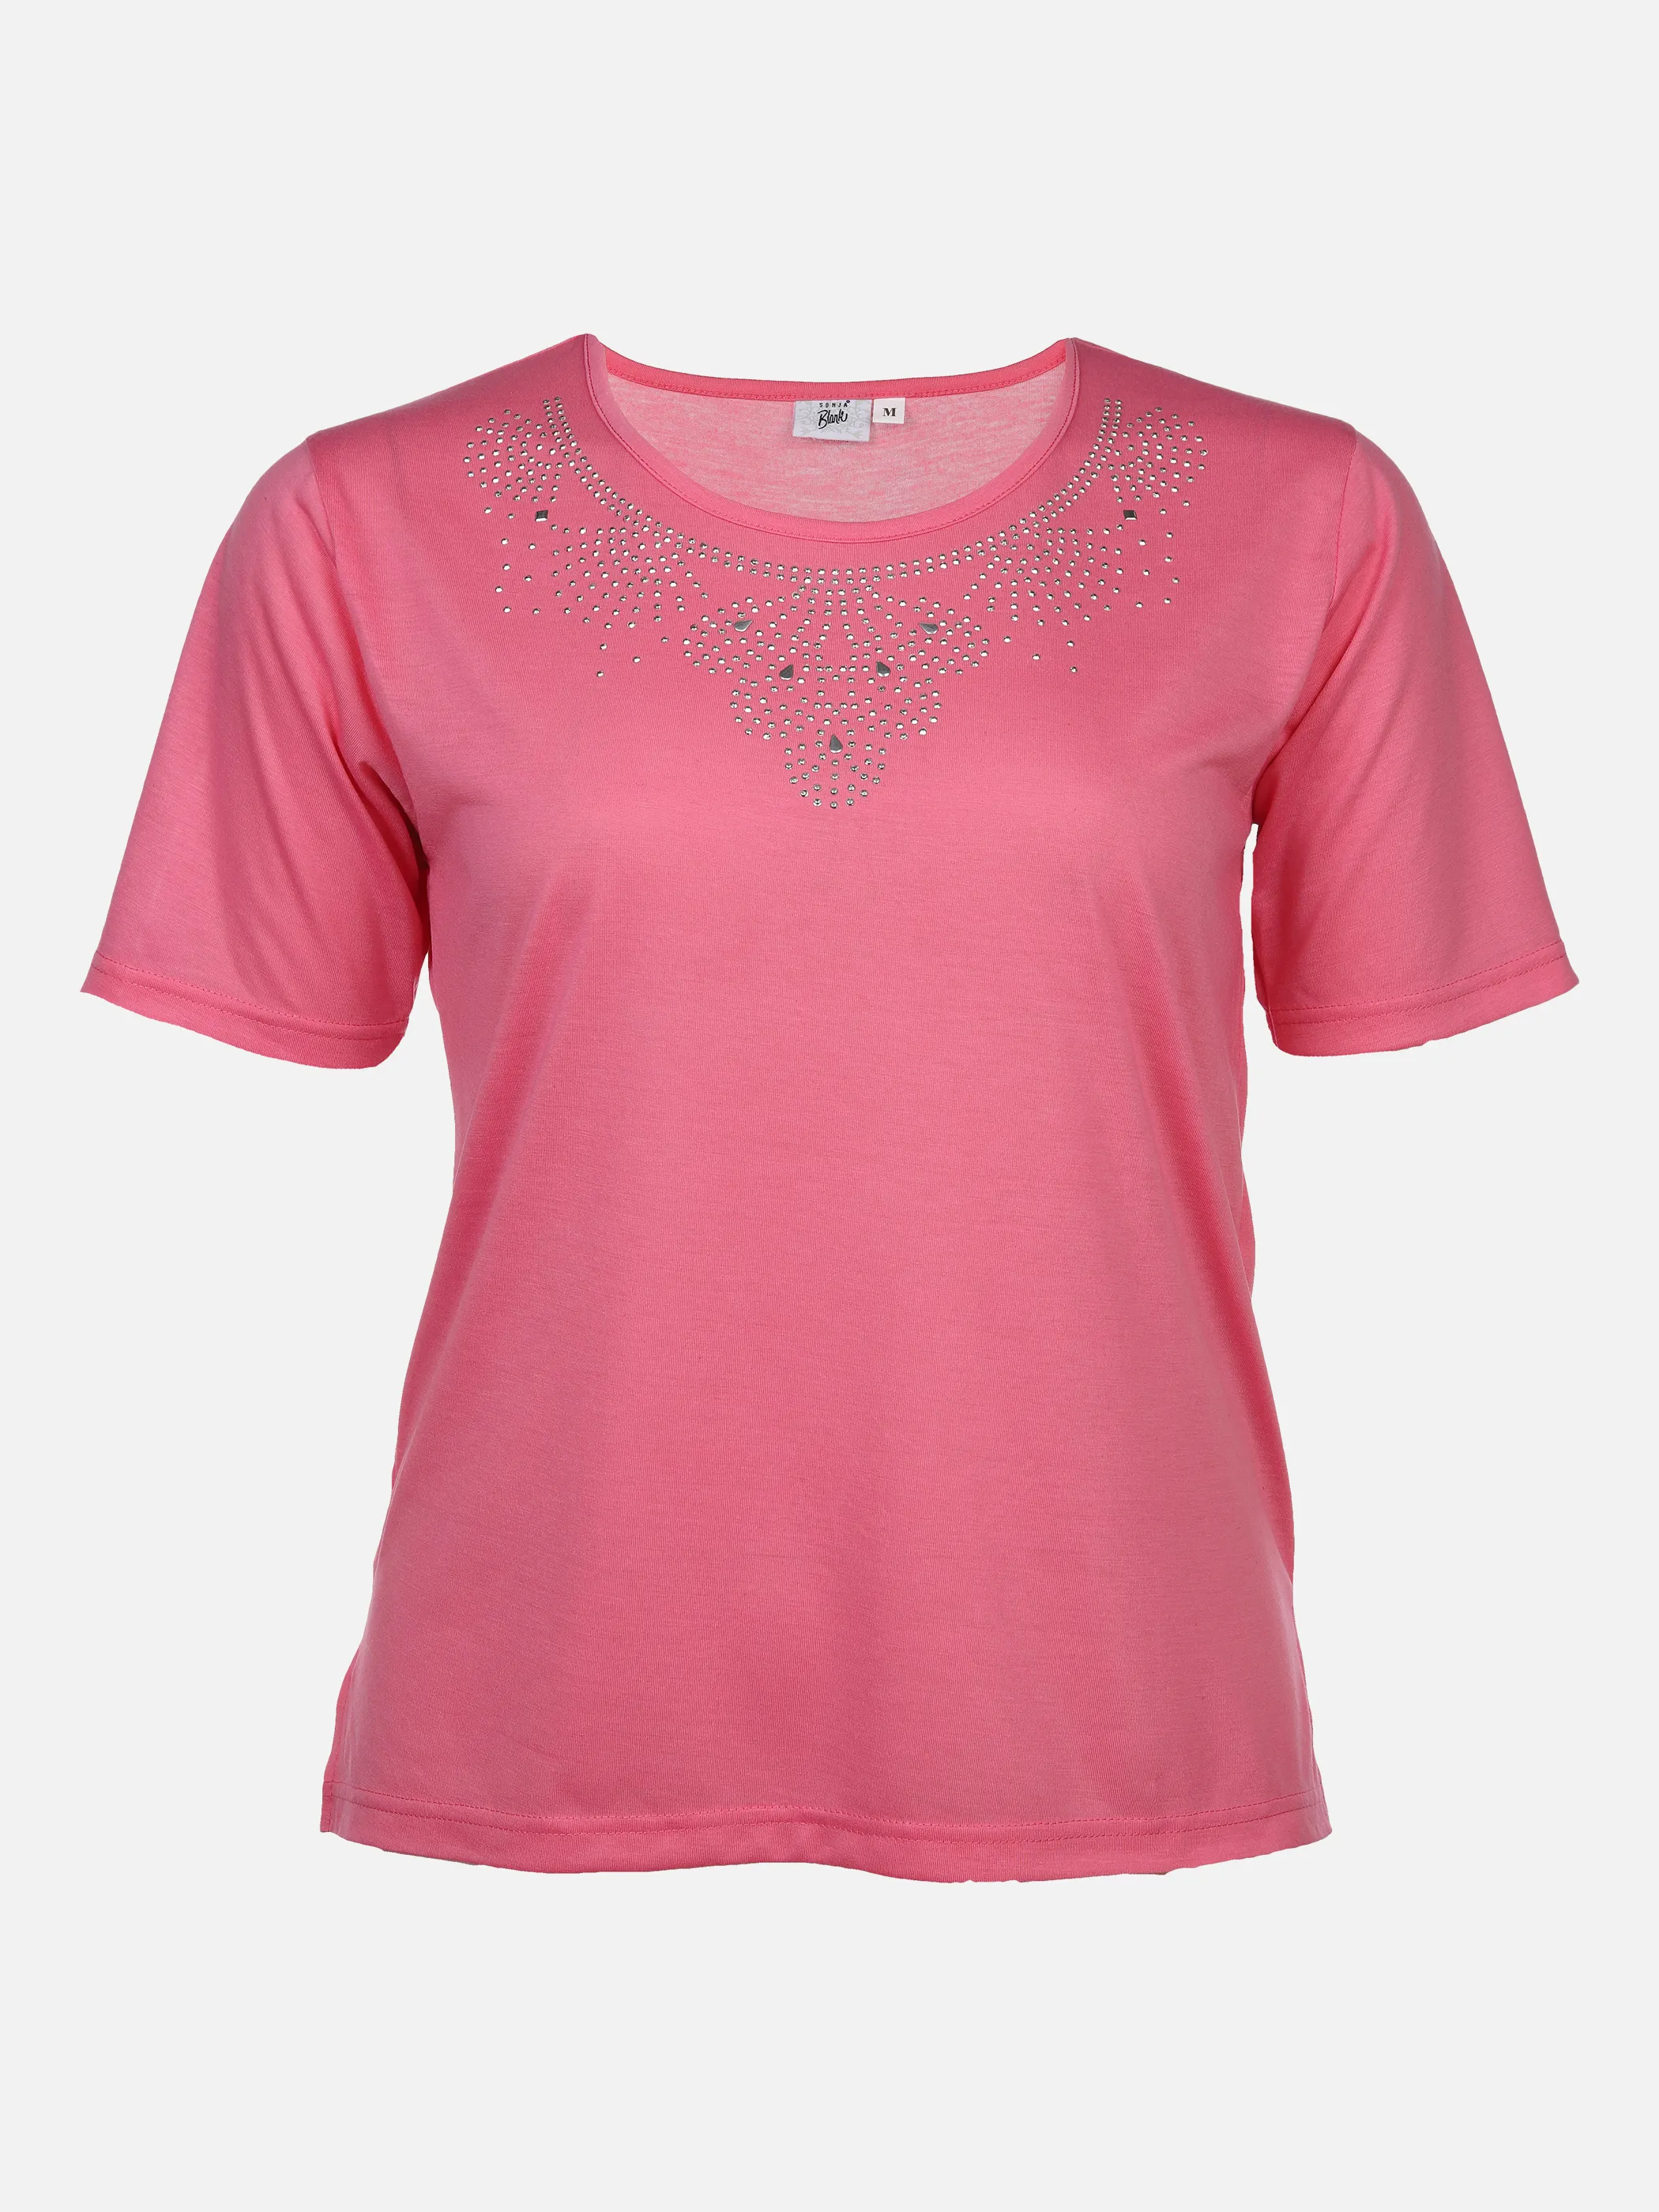 Sonja Blank Da-gr.Gr.T-Shirt m.Strassapplikation Pink 876189 PINK 1